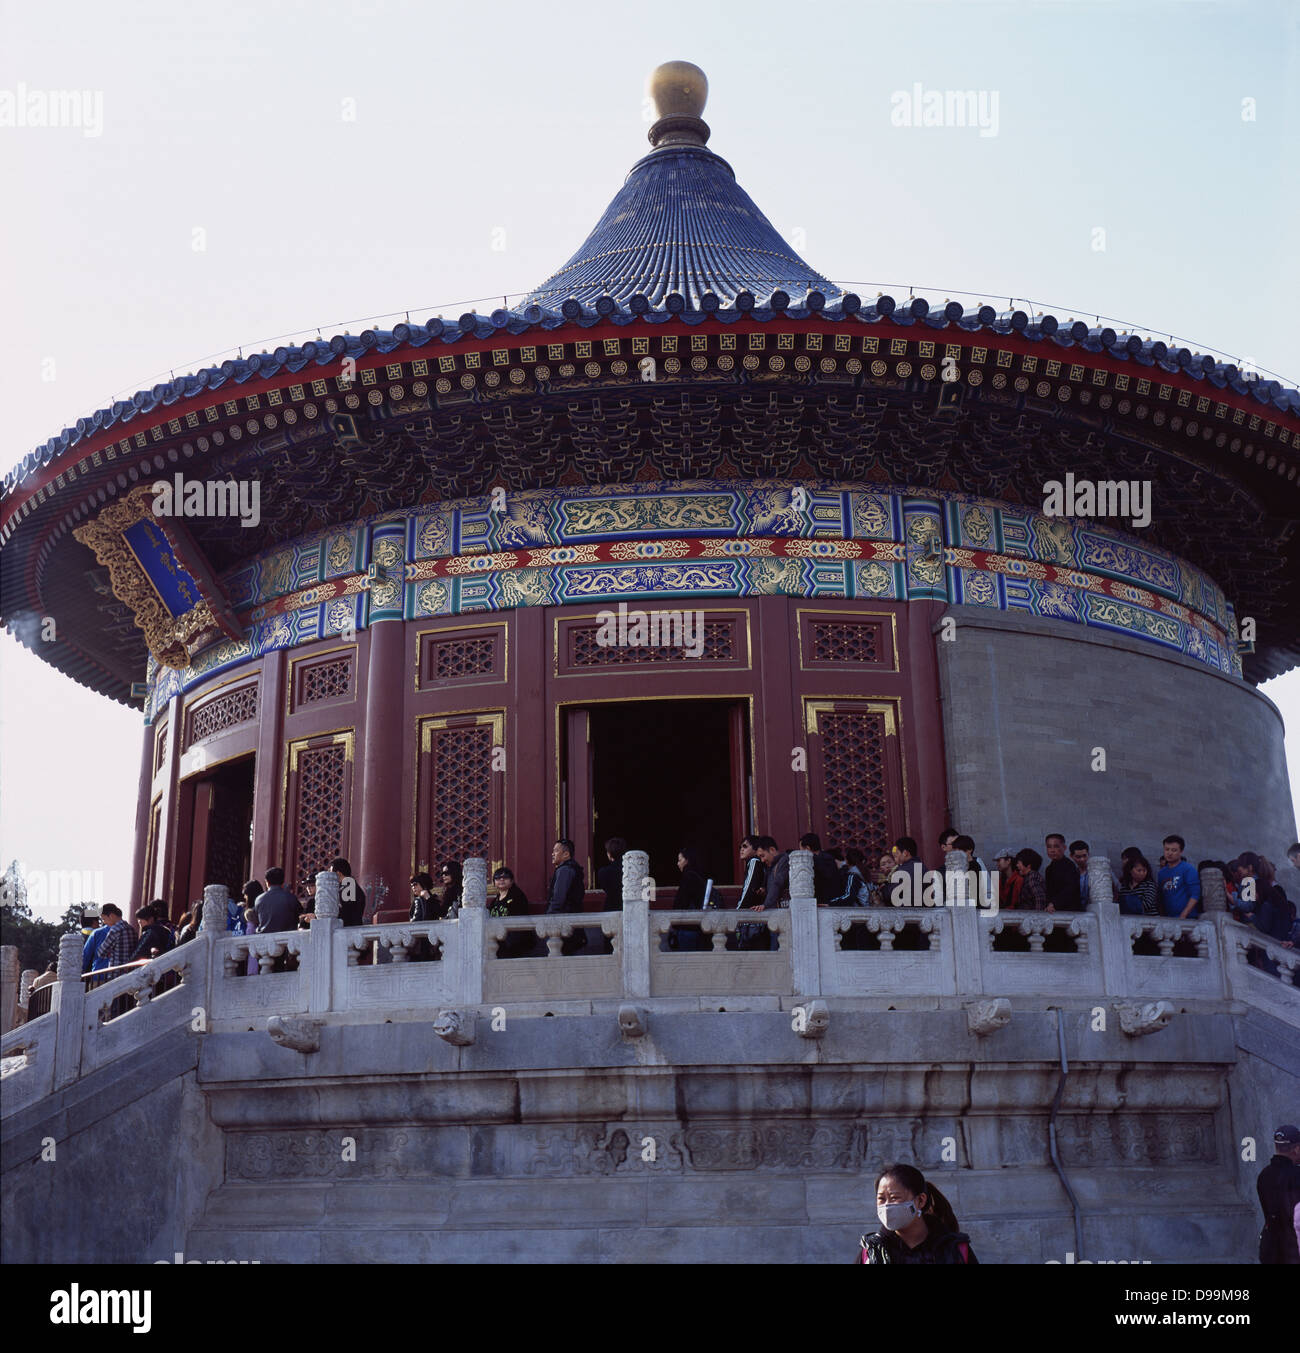 Halle der kaiserlichen Kapelle des Himmels - Huangqiongyu, im Tempel des Himmels. Peking, China. 2013 Stockfoto